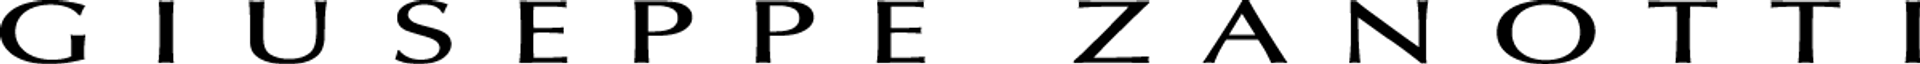 GIUSEPPE ZANOTTI logo